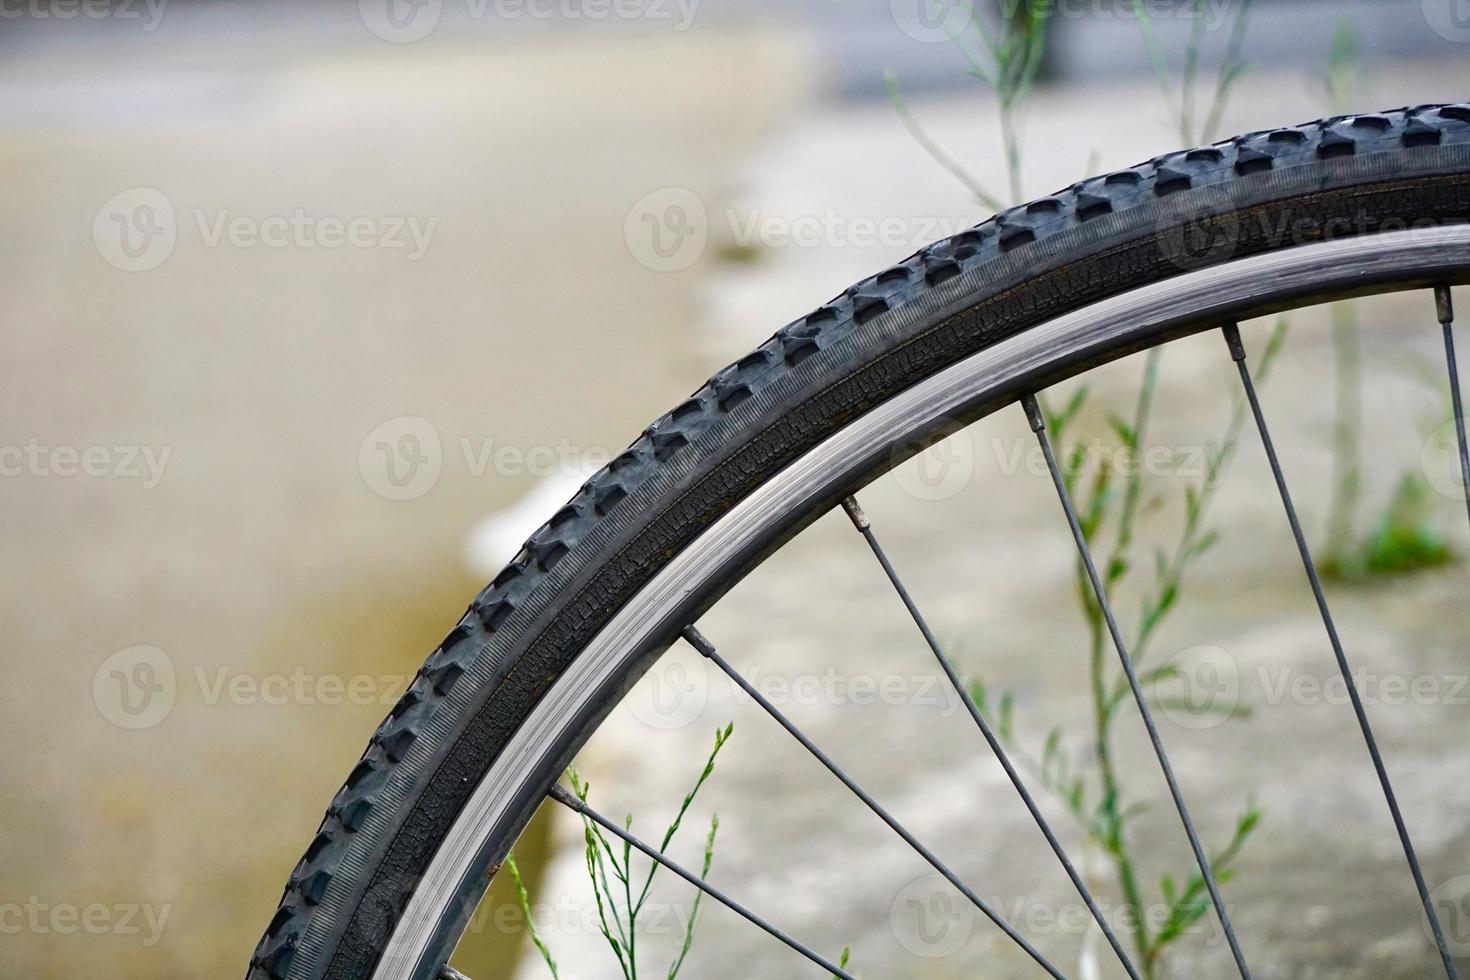 roda de bicicleta na rua foto